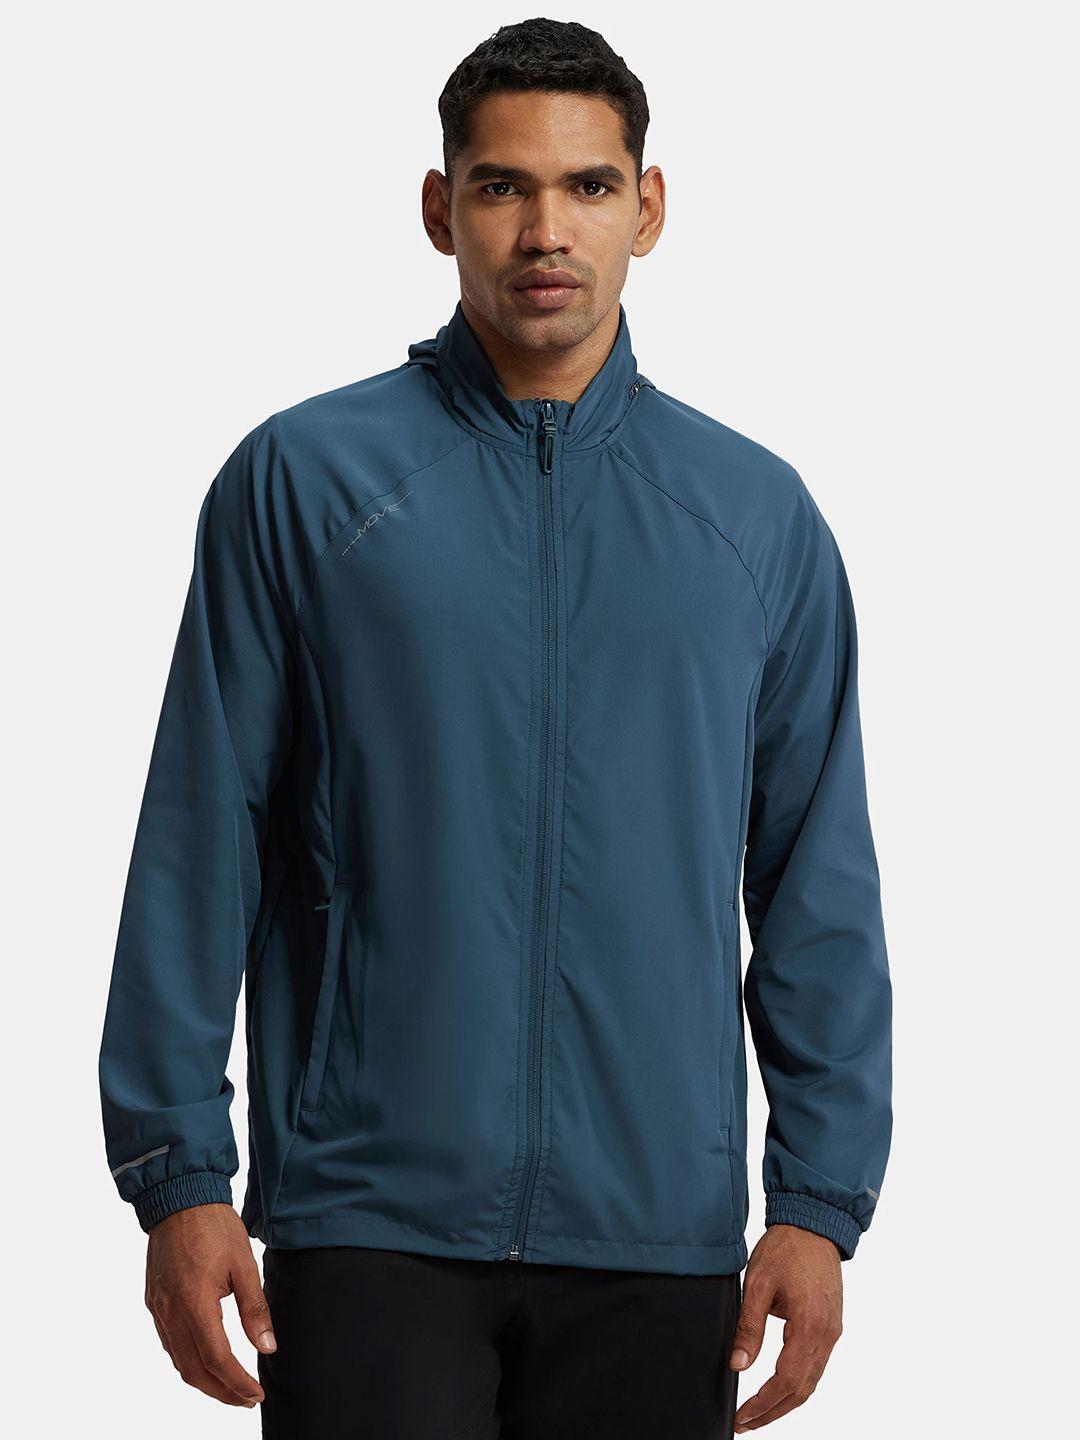 jockey hooded raglan sleeves water resistant antimicrobial running sporty jacket